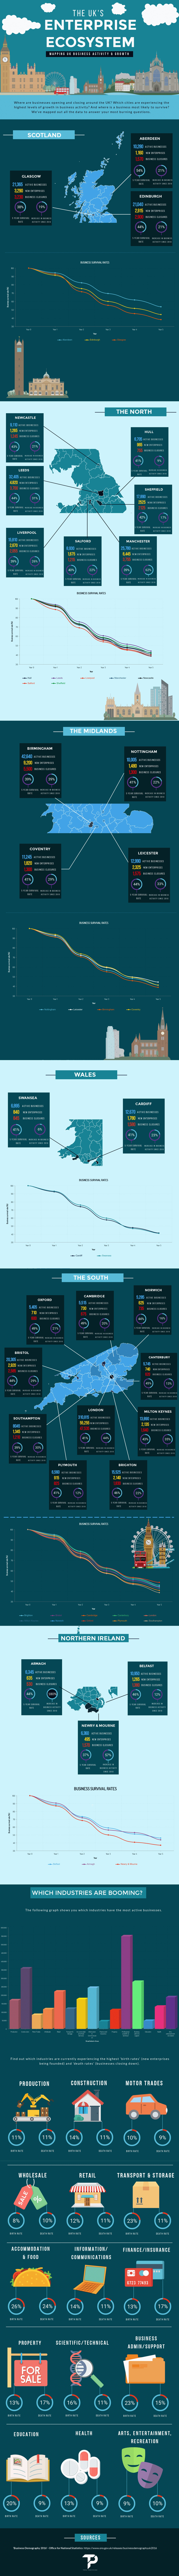 The Enterprise Economy Infographic